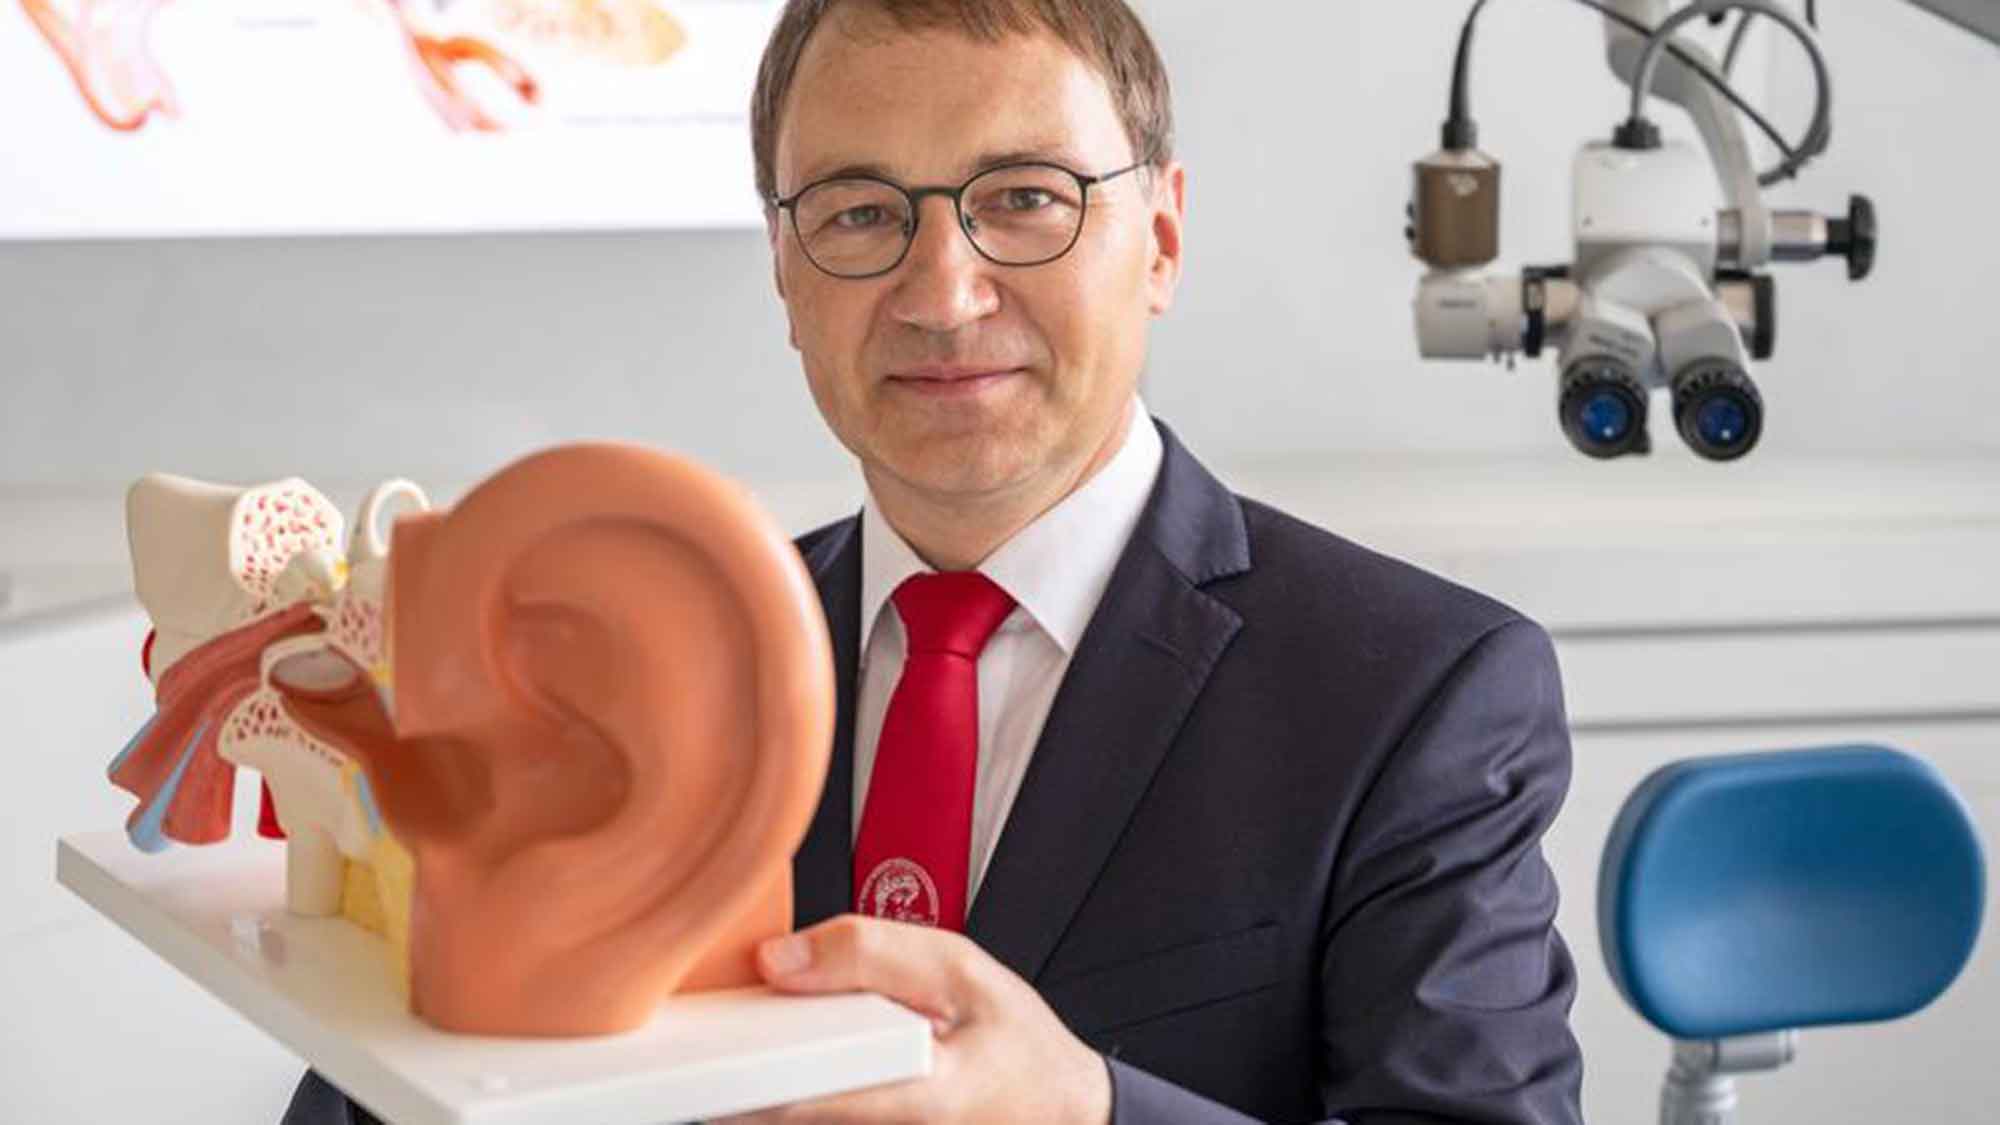 Universitätsmedizin Halle: Hörsturz – Therapie mit hochdosierten Medikamenten bringt keine Vorteile gegenüber Standardbehandlung